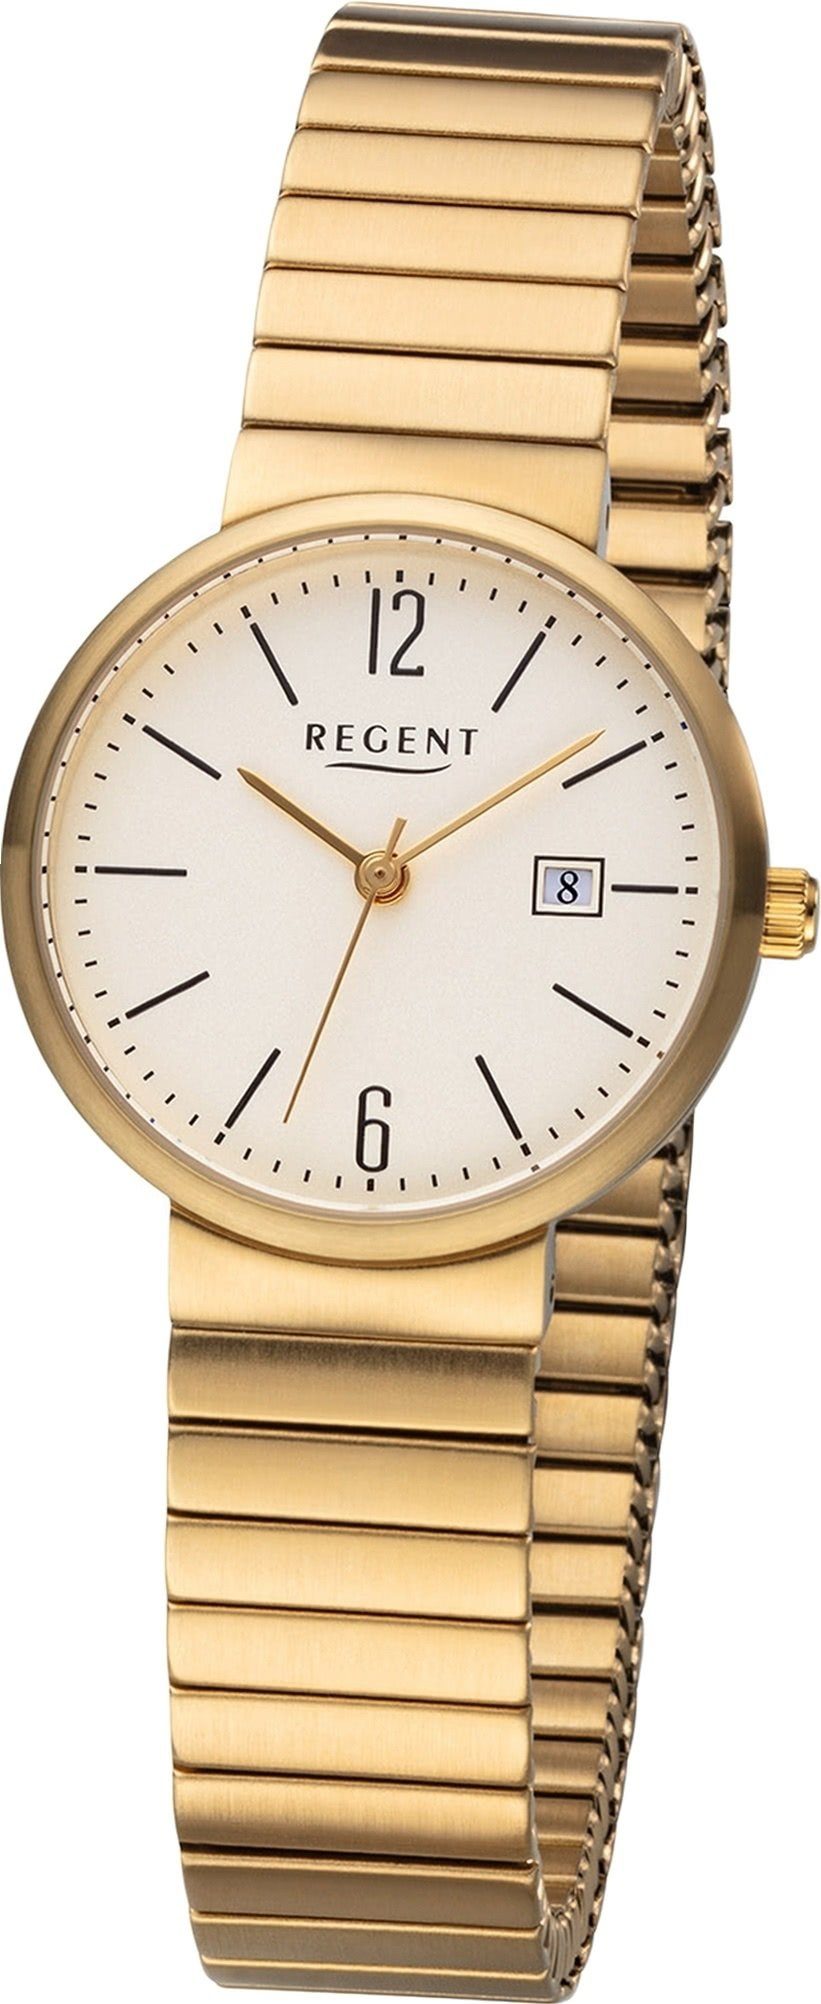 Regent Quarzuhr Regent Metall Damen Uhr F-1203 Analog, Damenuhr Metallarmband gold, rundes Gehäuse, klein (ca. 29mm)